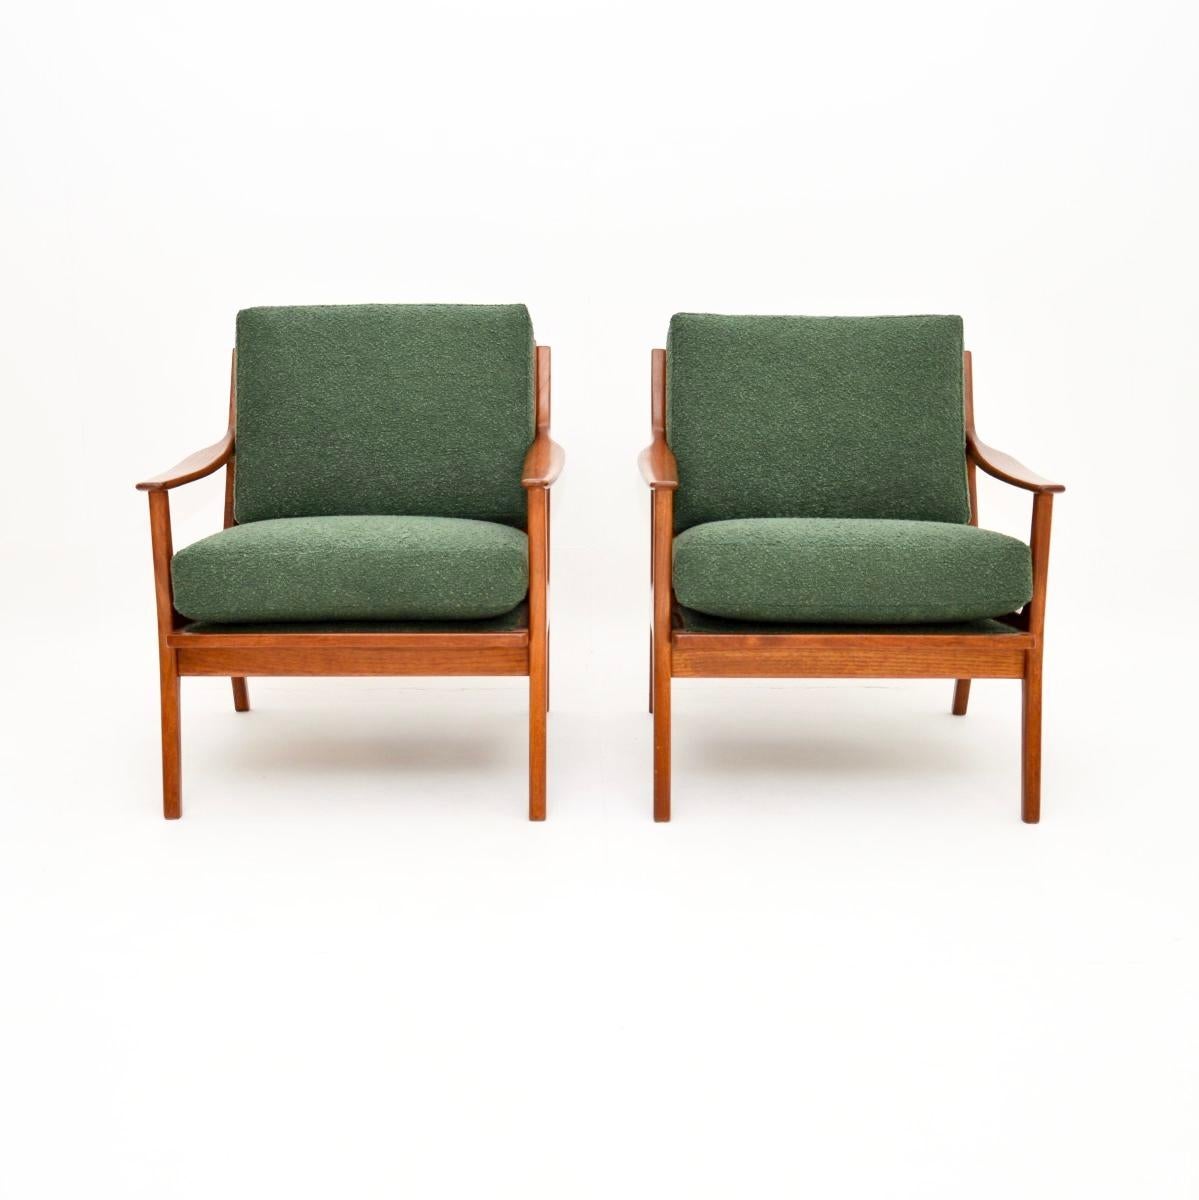 Une paire de fauteuils en teck danois vintage, élégants et extrêmement bien faits. Récemment importées du Danemark, elles datent des années 1960.

La qualité est exceptionnelle, ils sont magnifiquement conçus et très confortables. Les cadres en teck